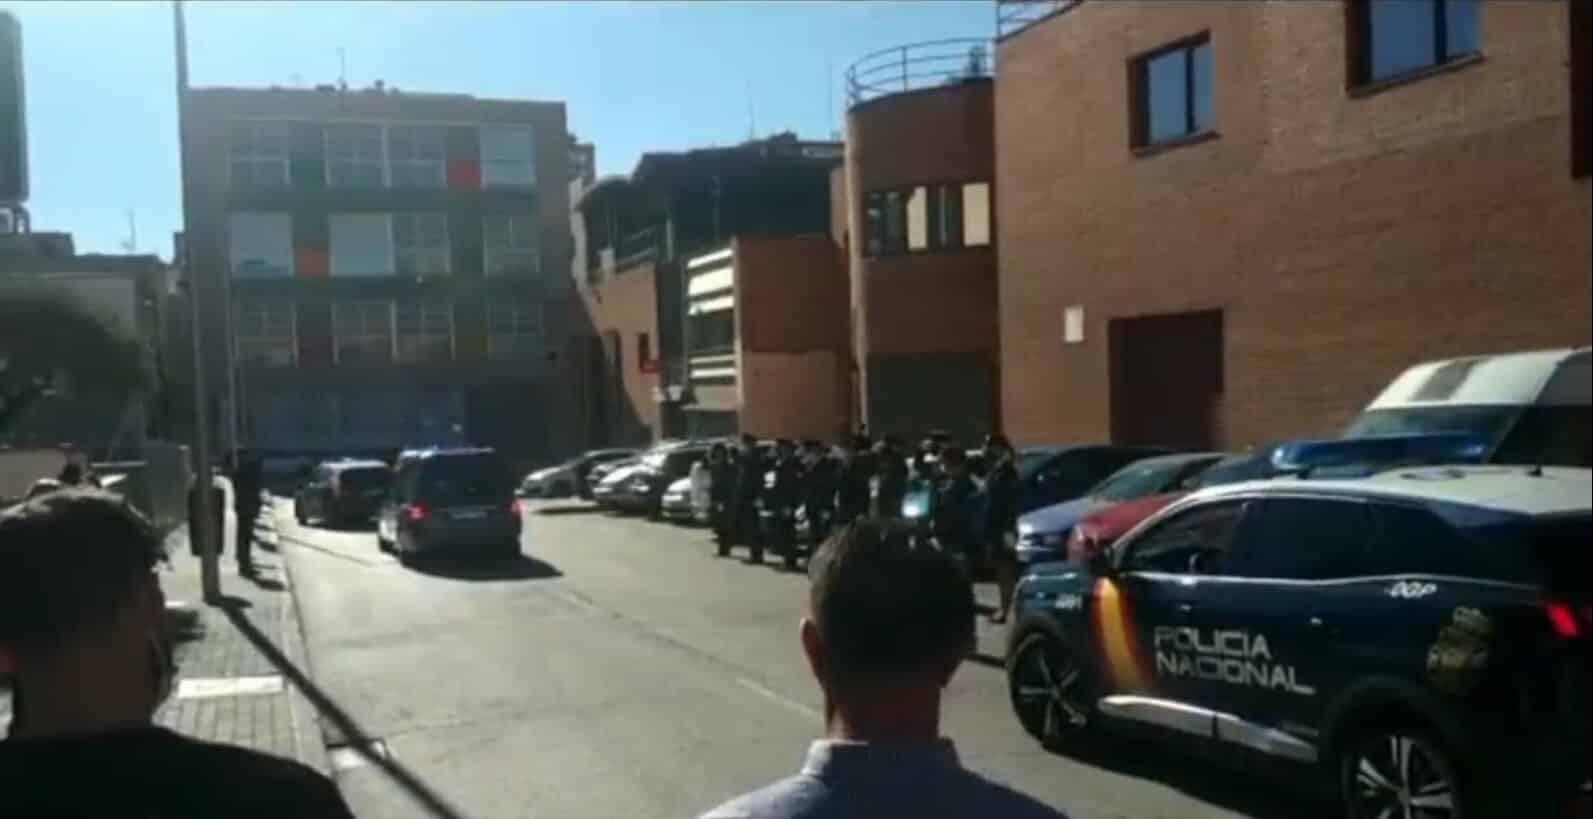 La Policía homenajea a una compañera de la comisaría de Ciudad Lineal de Madrid tras su fallecimiento